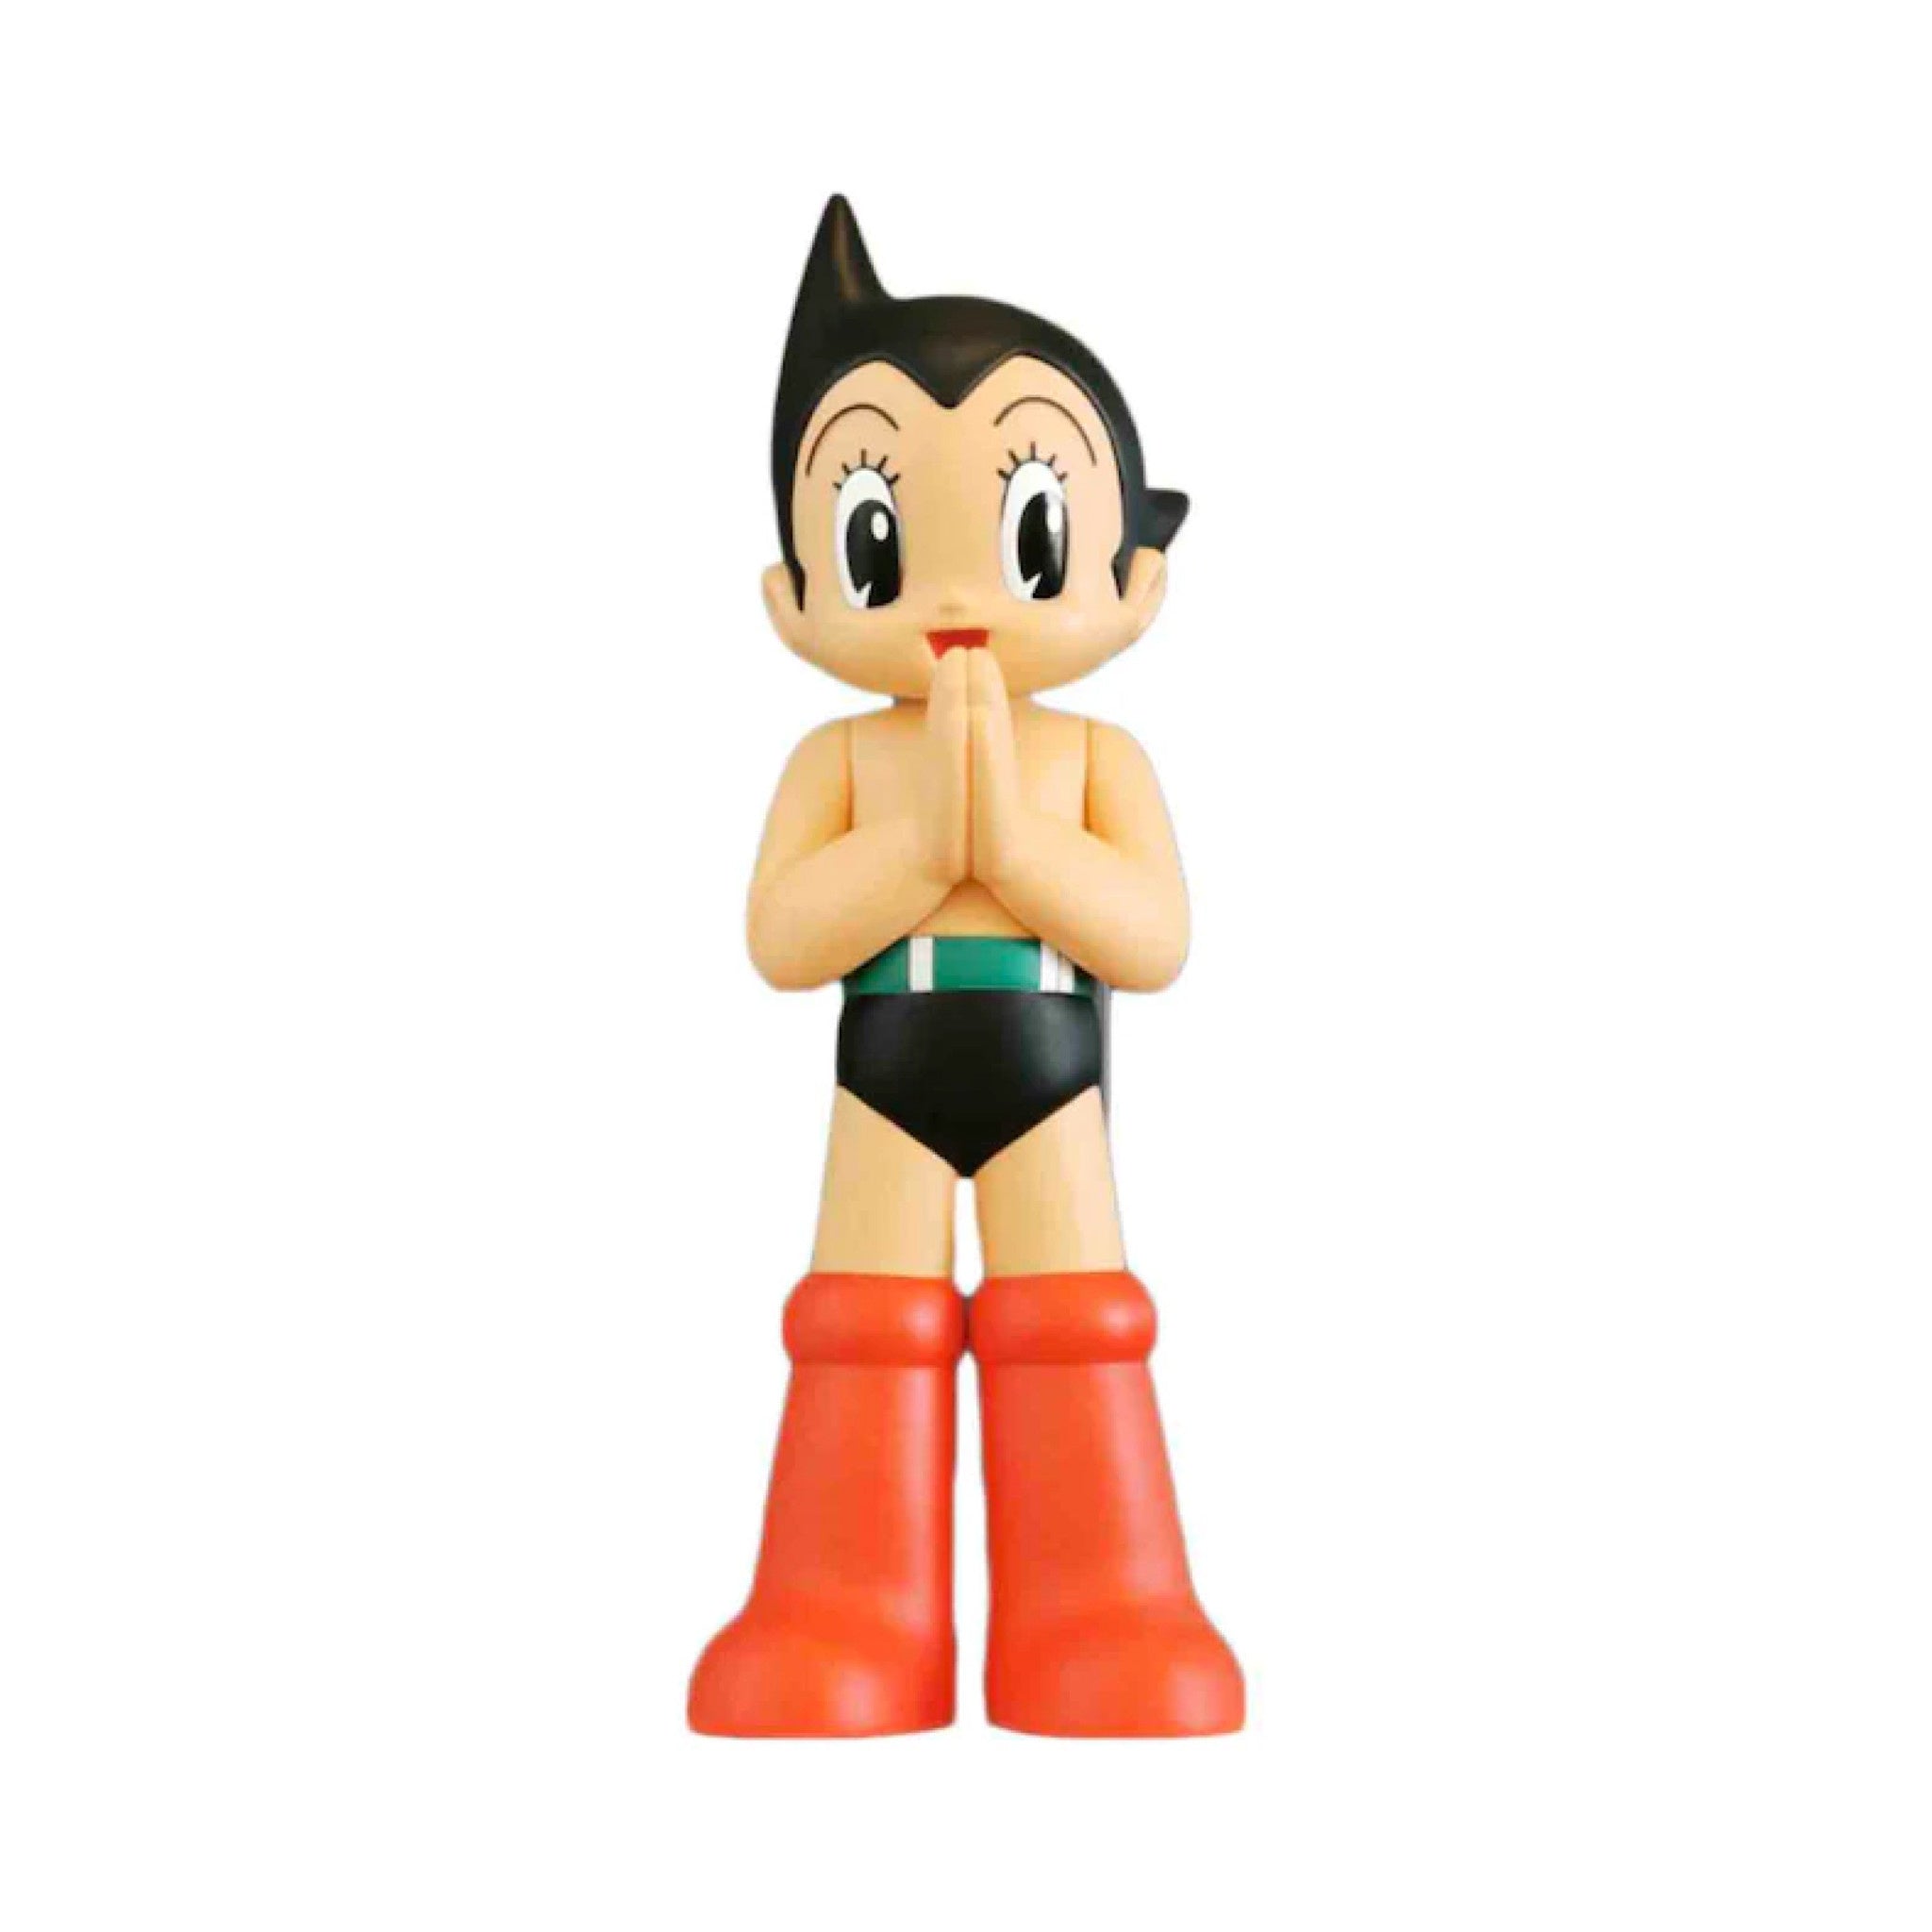 Astro Boy Greeting - OG 1000% - Wynwood Walls Shop